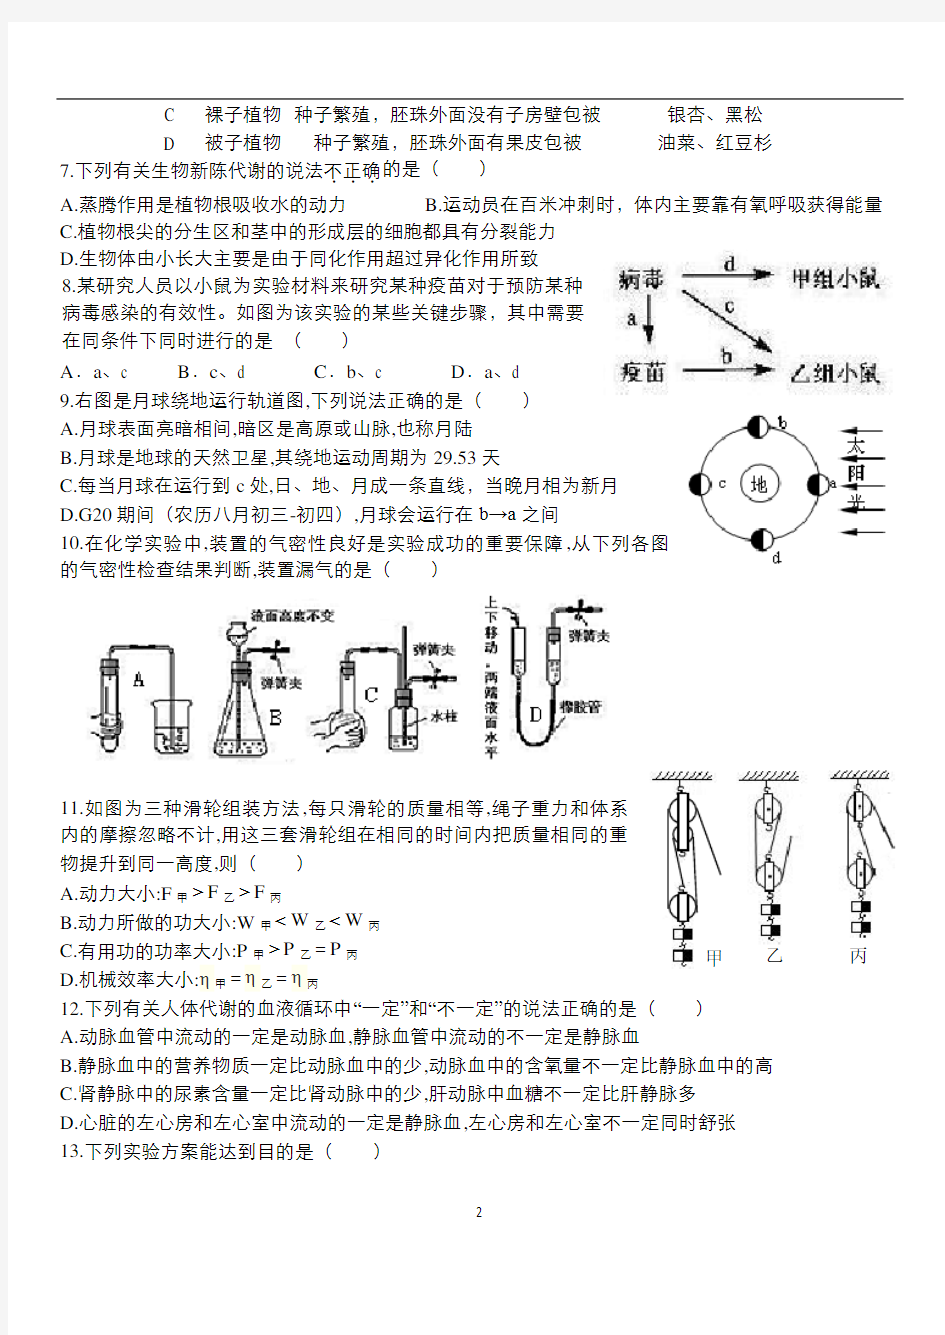 2016杭州中考模拟科学卷猜题卷(含答案,稍难)分析